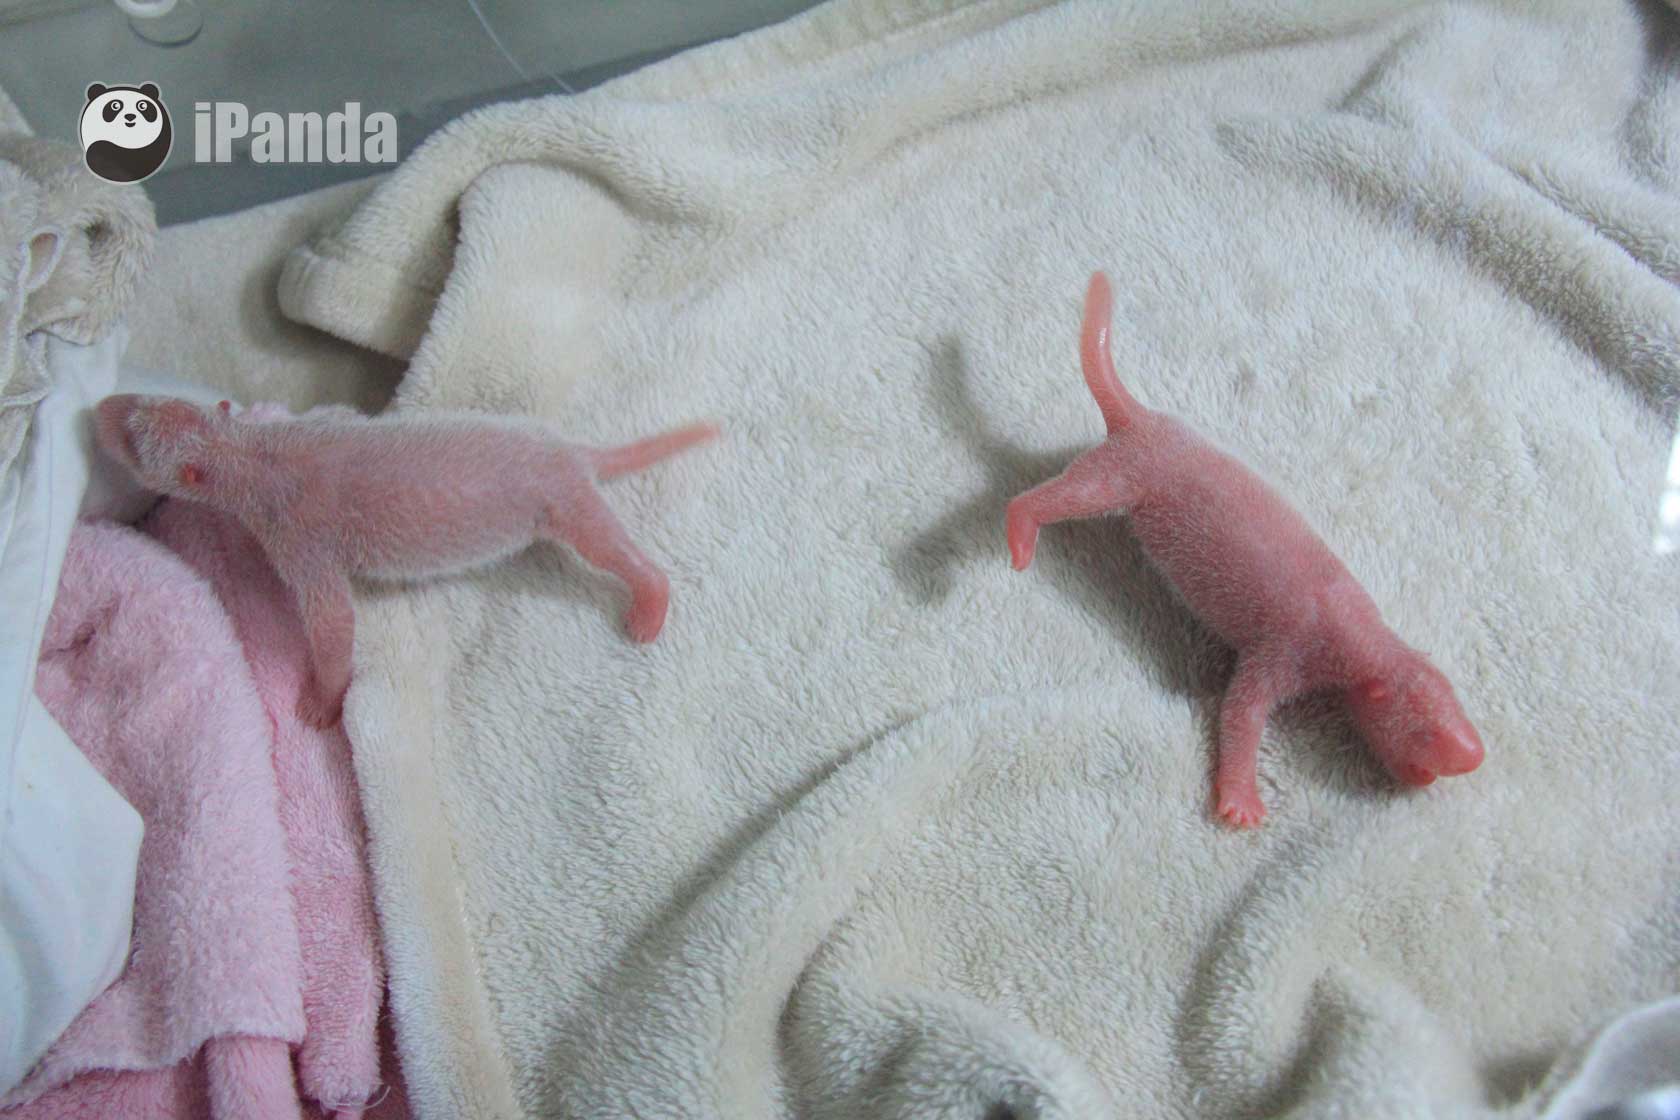 熊貓基地大熊貓雙胞胎寶寶密集出生——“奇緣”順利産下成都大熊貓基地今年第5對雙胞胎